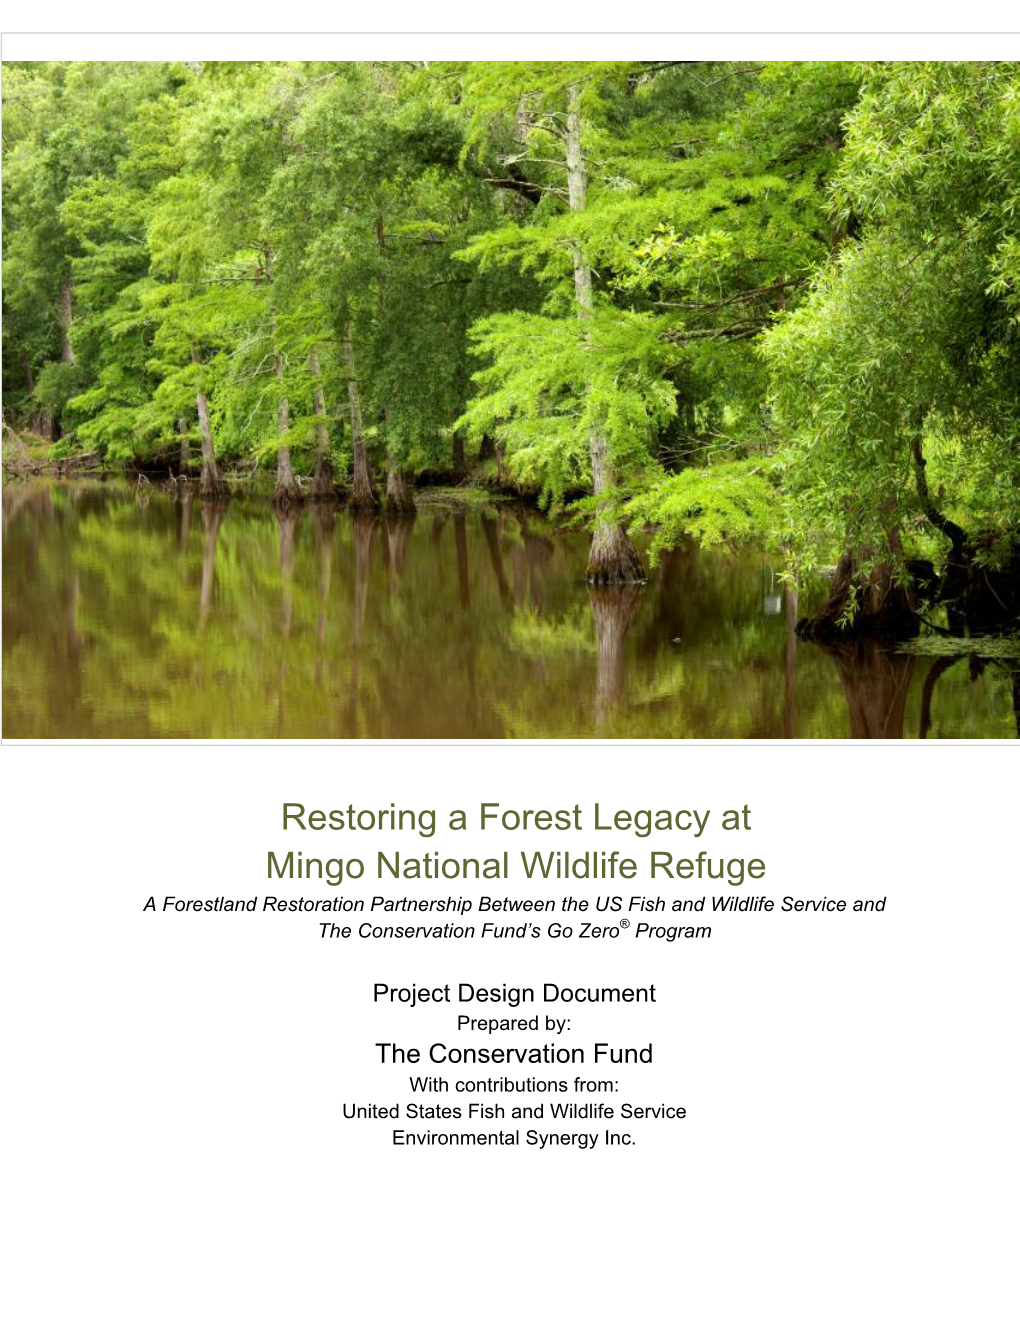 Restoring a Forest Legacy at Mingo National Wildlife Refuge